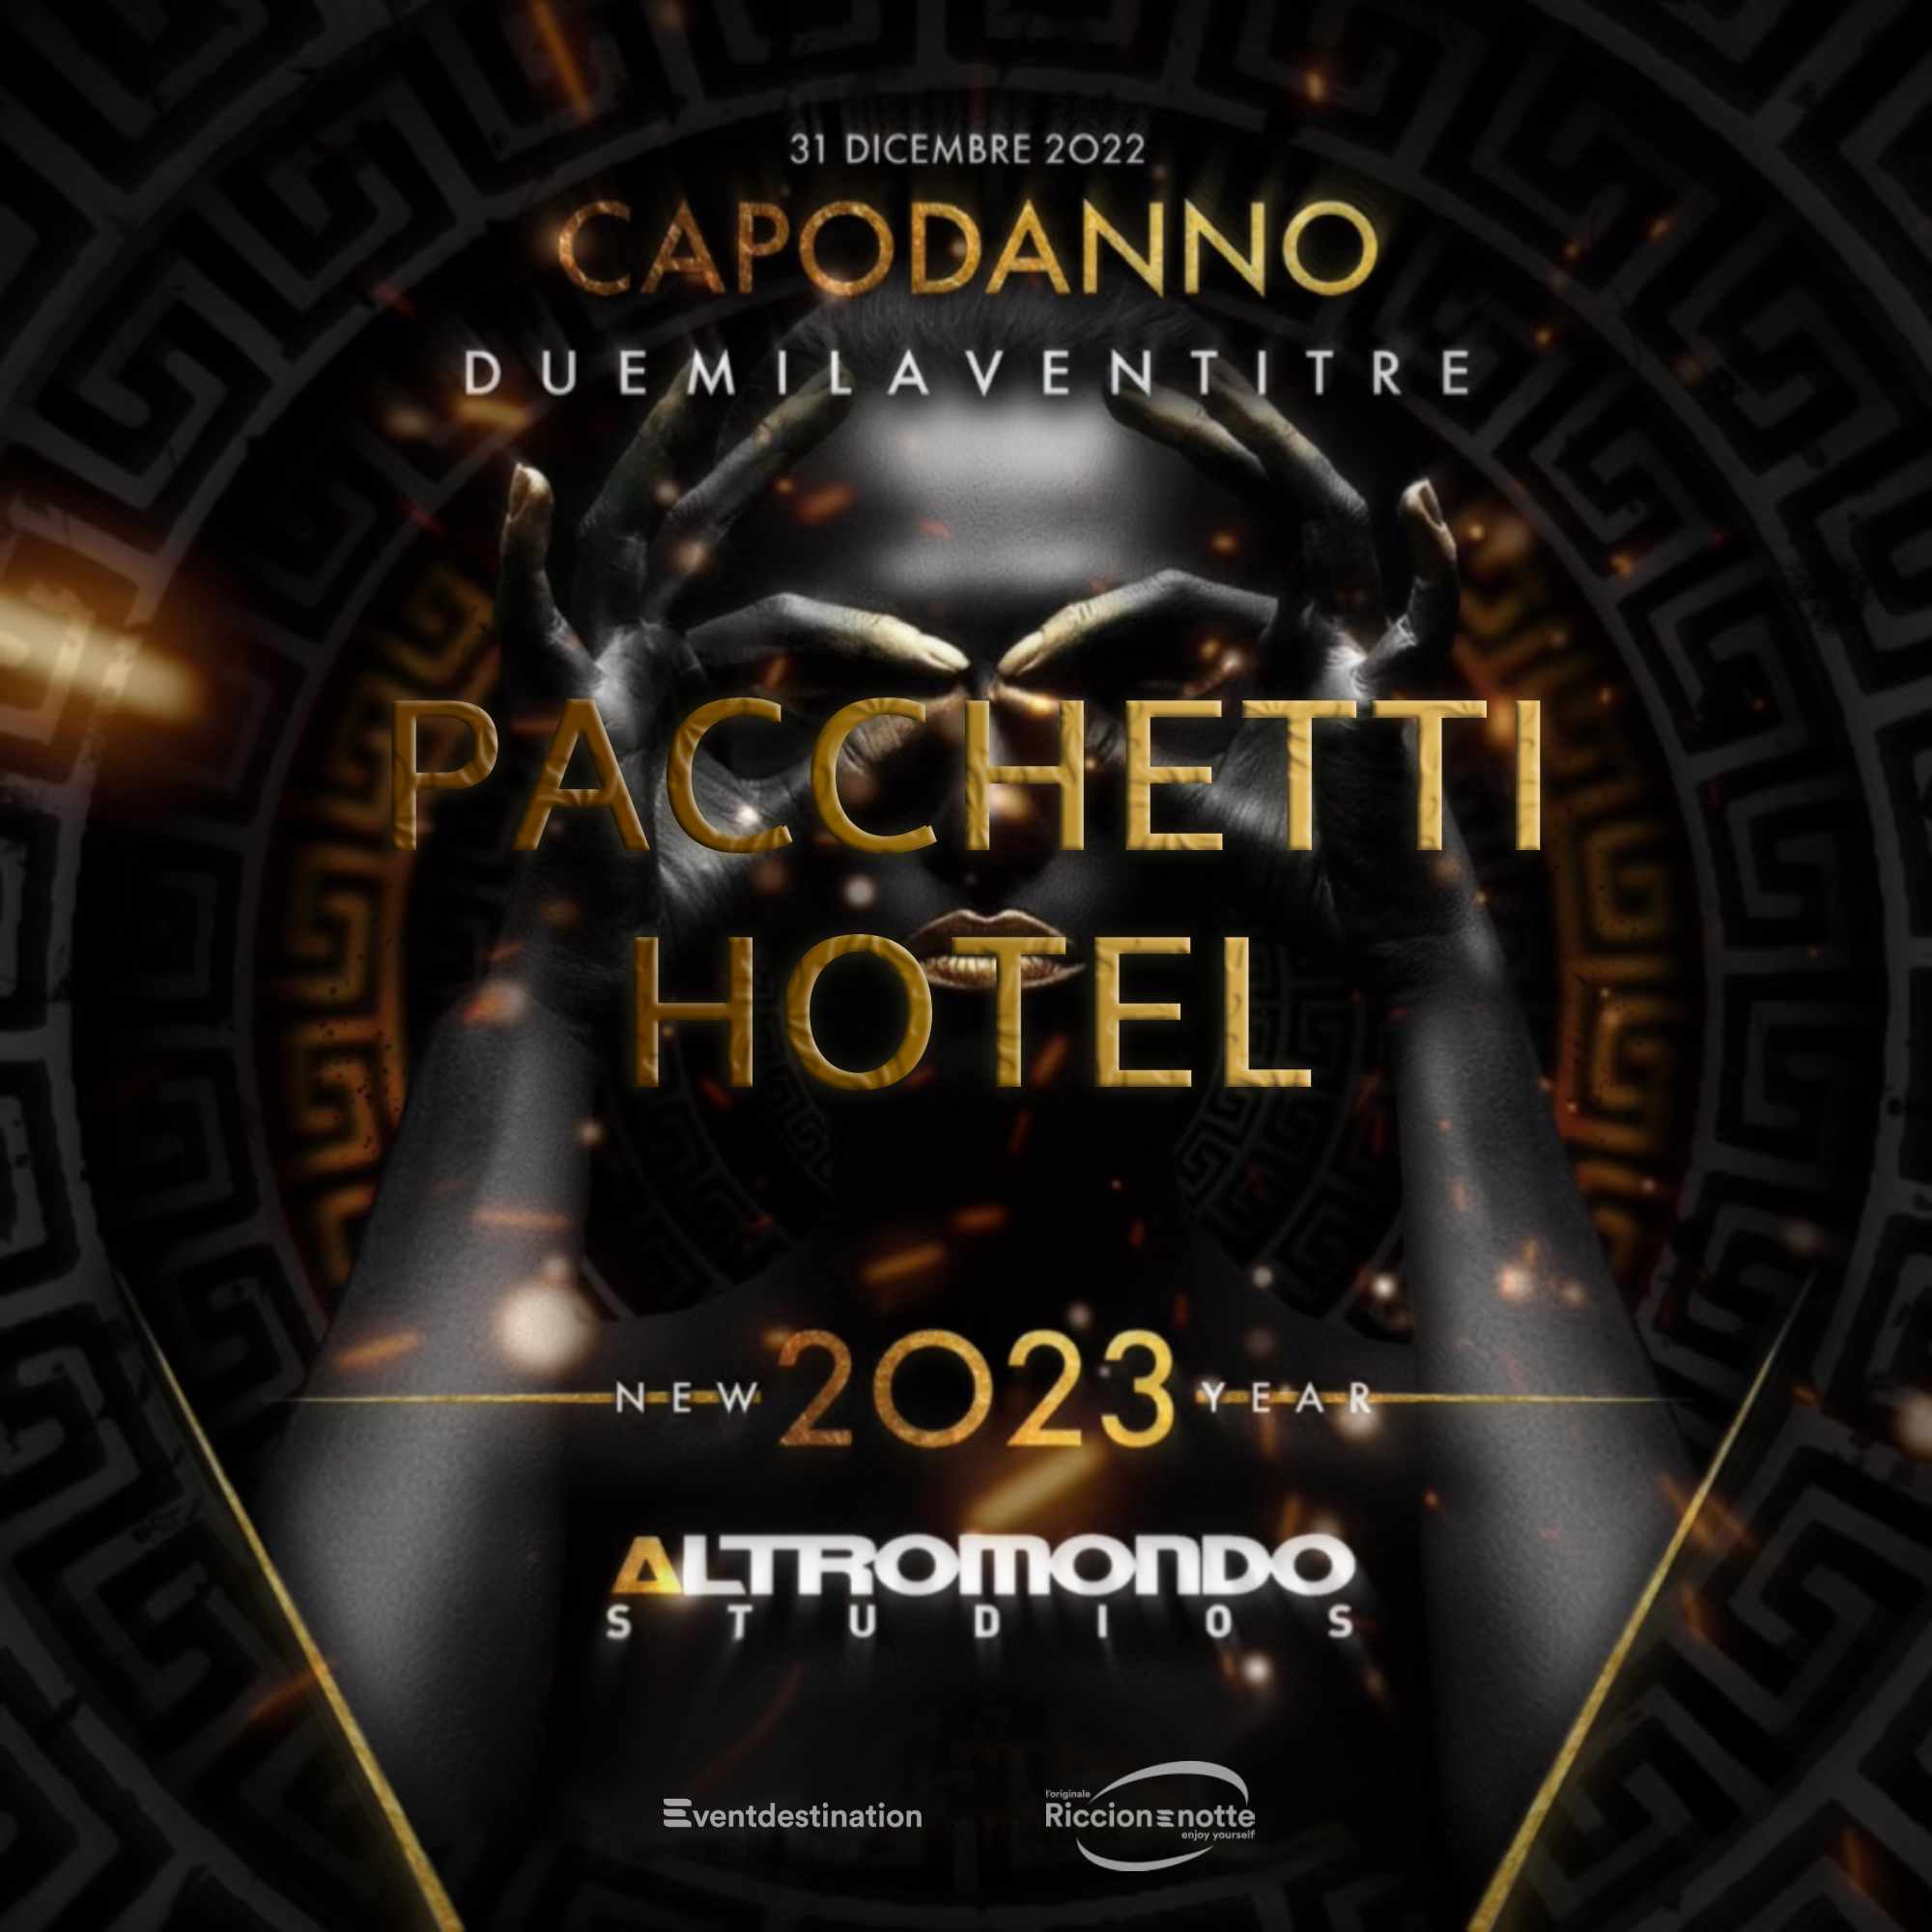 CAPODANNO ALTROMONDO STUDIOS 2023 – Pacchetti Hotel ( Abrakadabra )